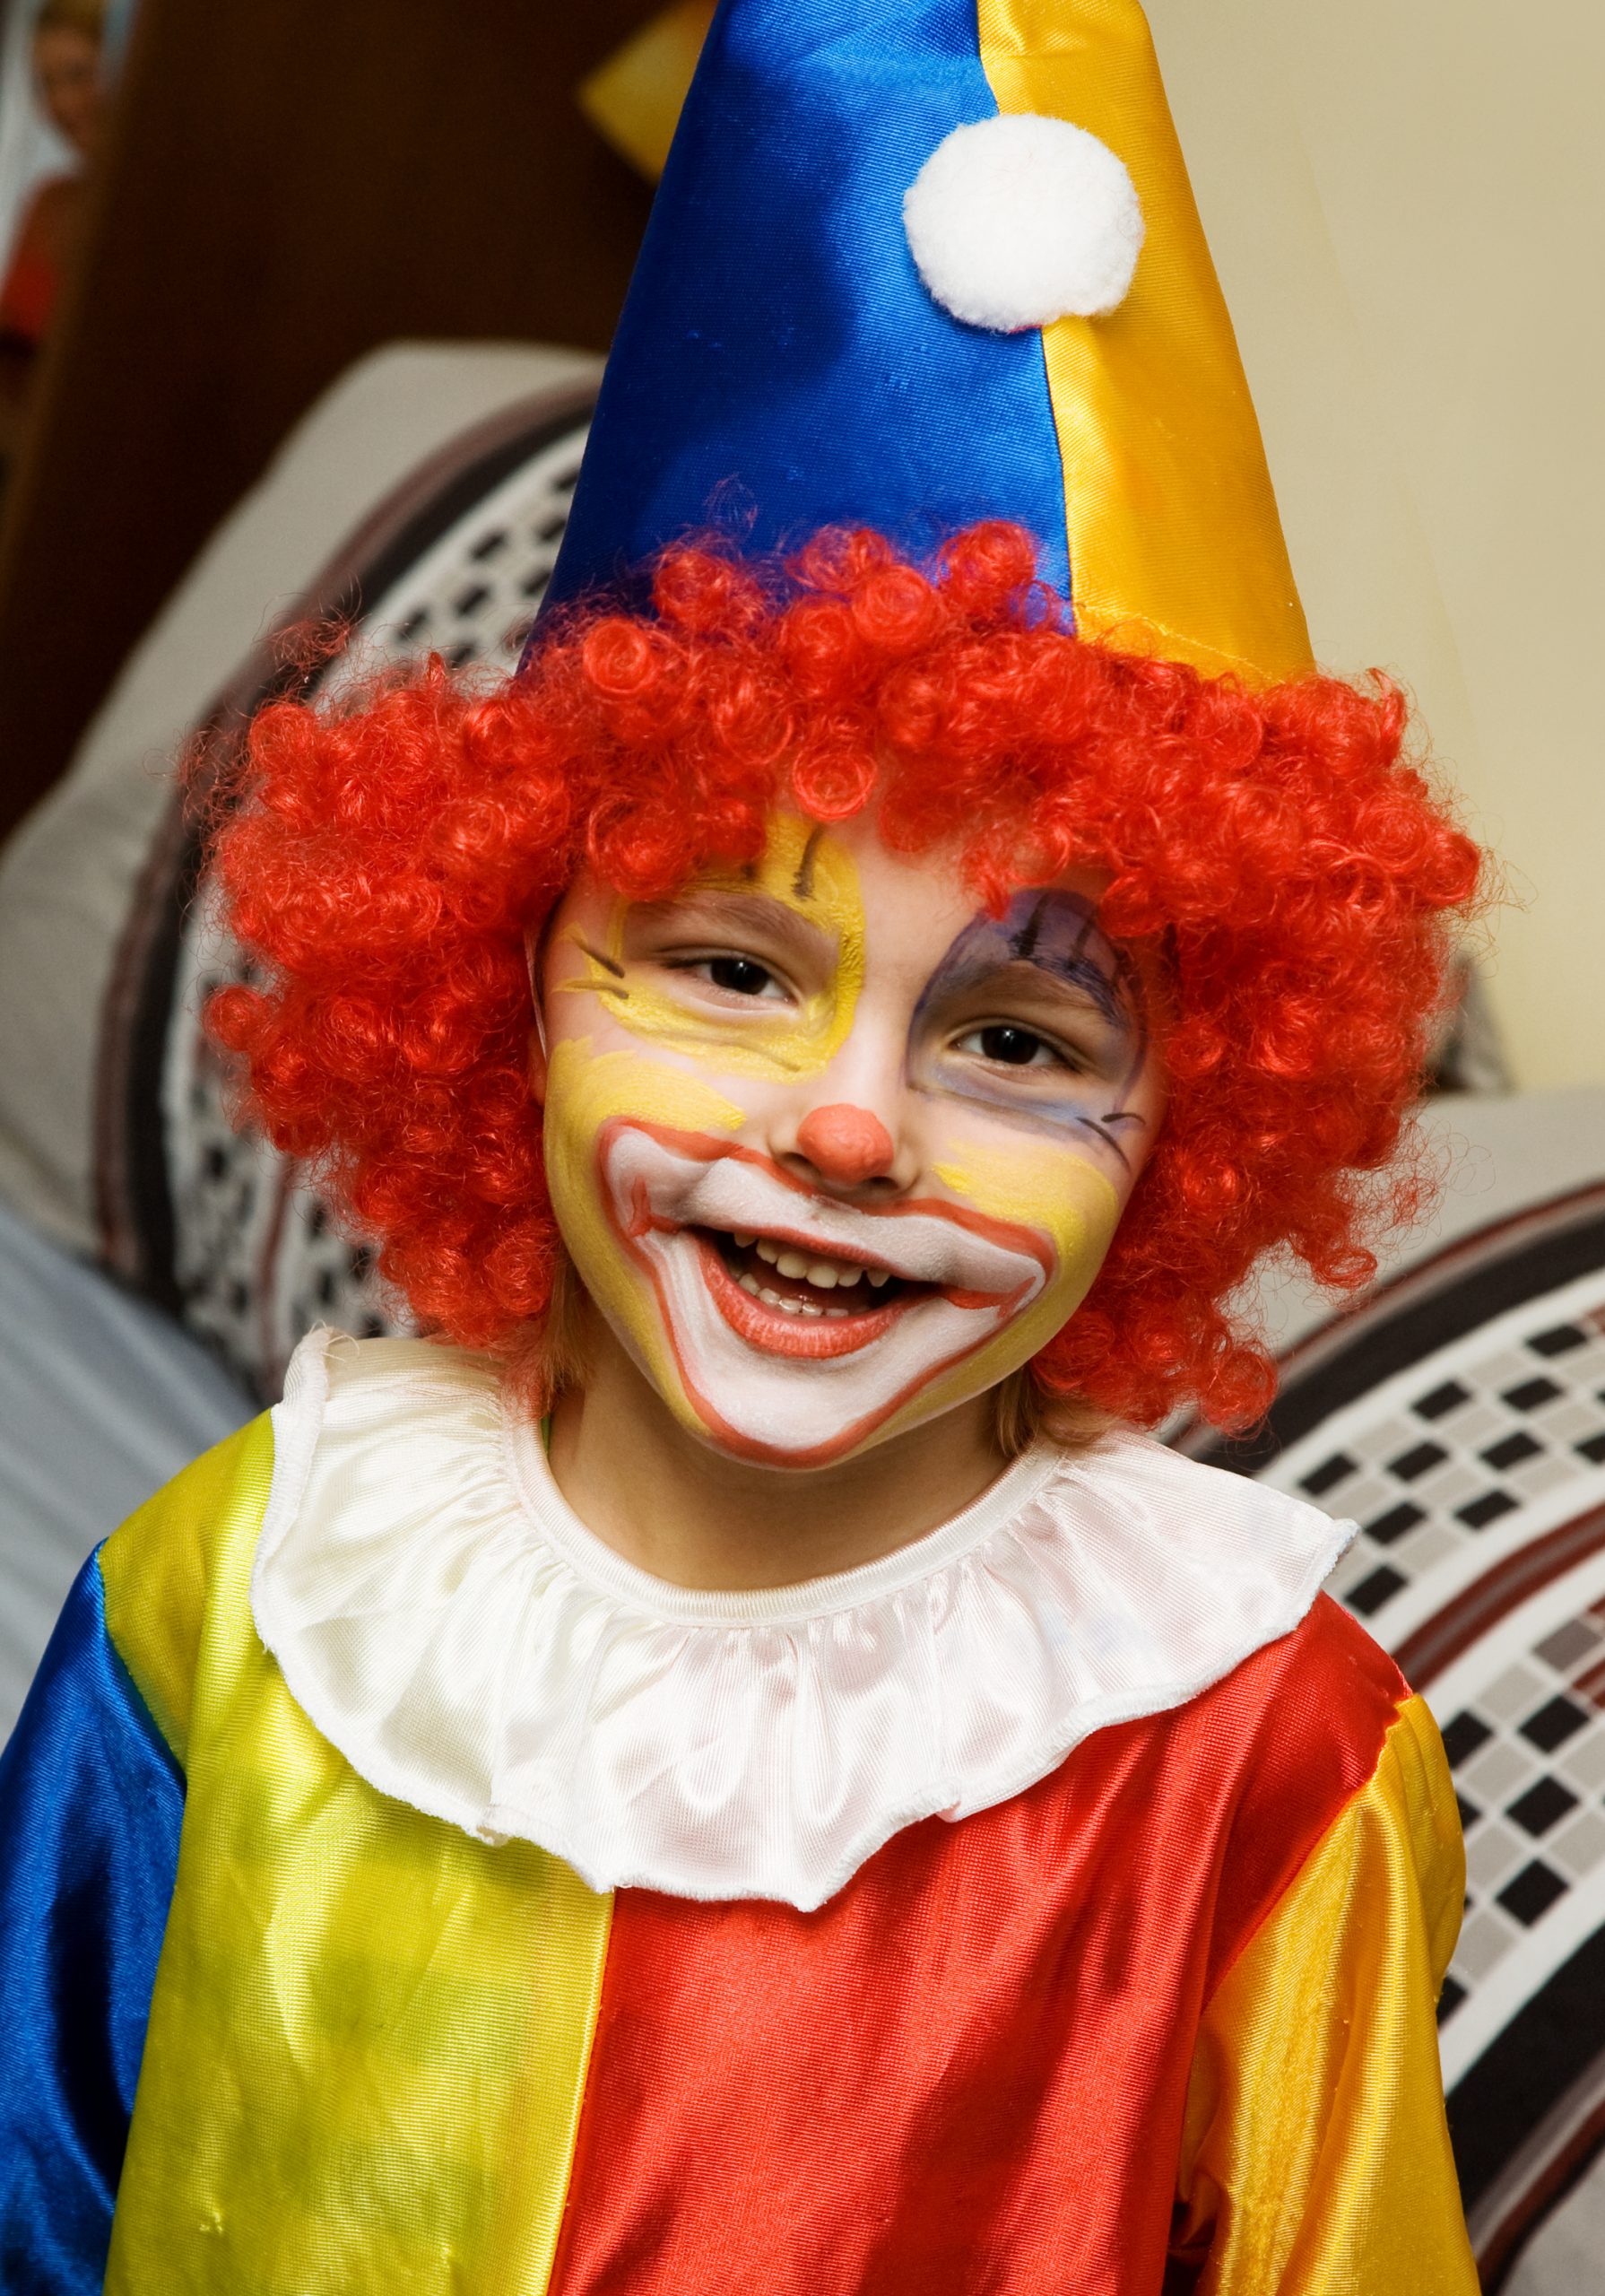 Clown Gesicht Malen - Vorlagen Zum Ausmalen Gratis Ausdrucken mit Clown Schminken Kinder Bilder